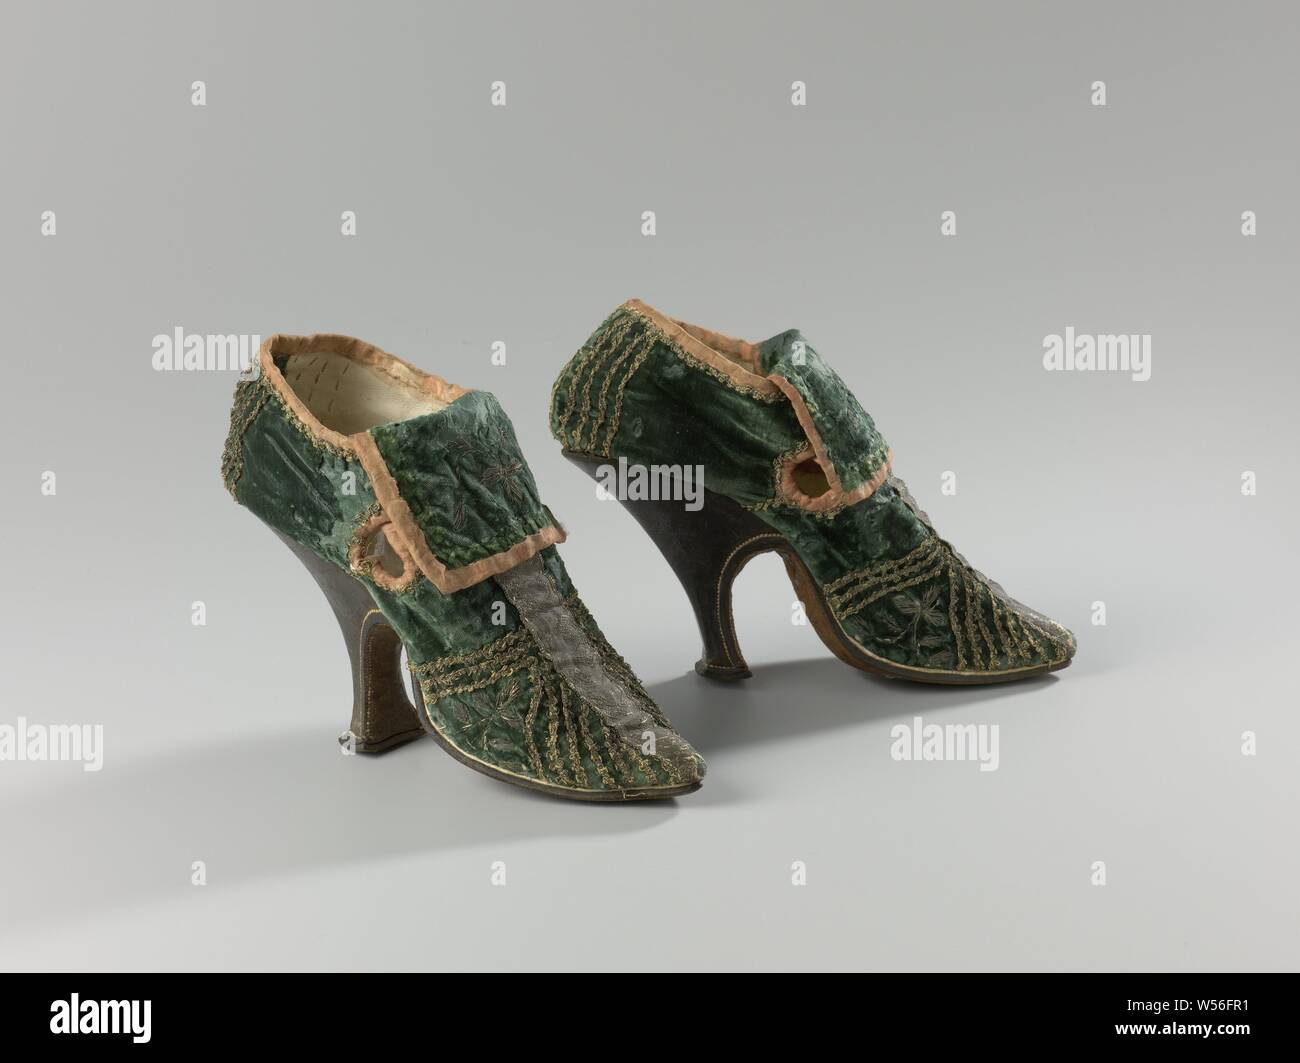 Par de zapatos de mujer par de mujer zapatos de tacón del zapato de mujer de terciopelo verde decorado con paredes verticales y diagonales guarnecidos de plata, con tacón alto fino